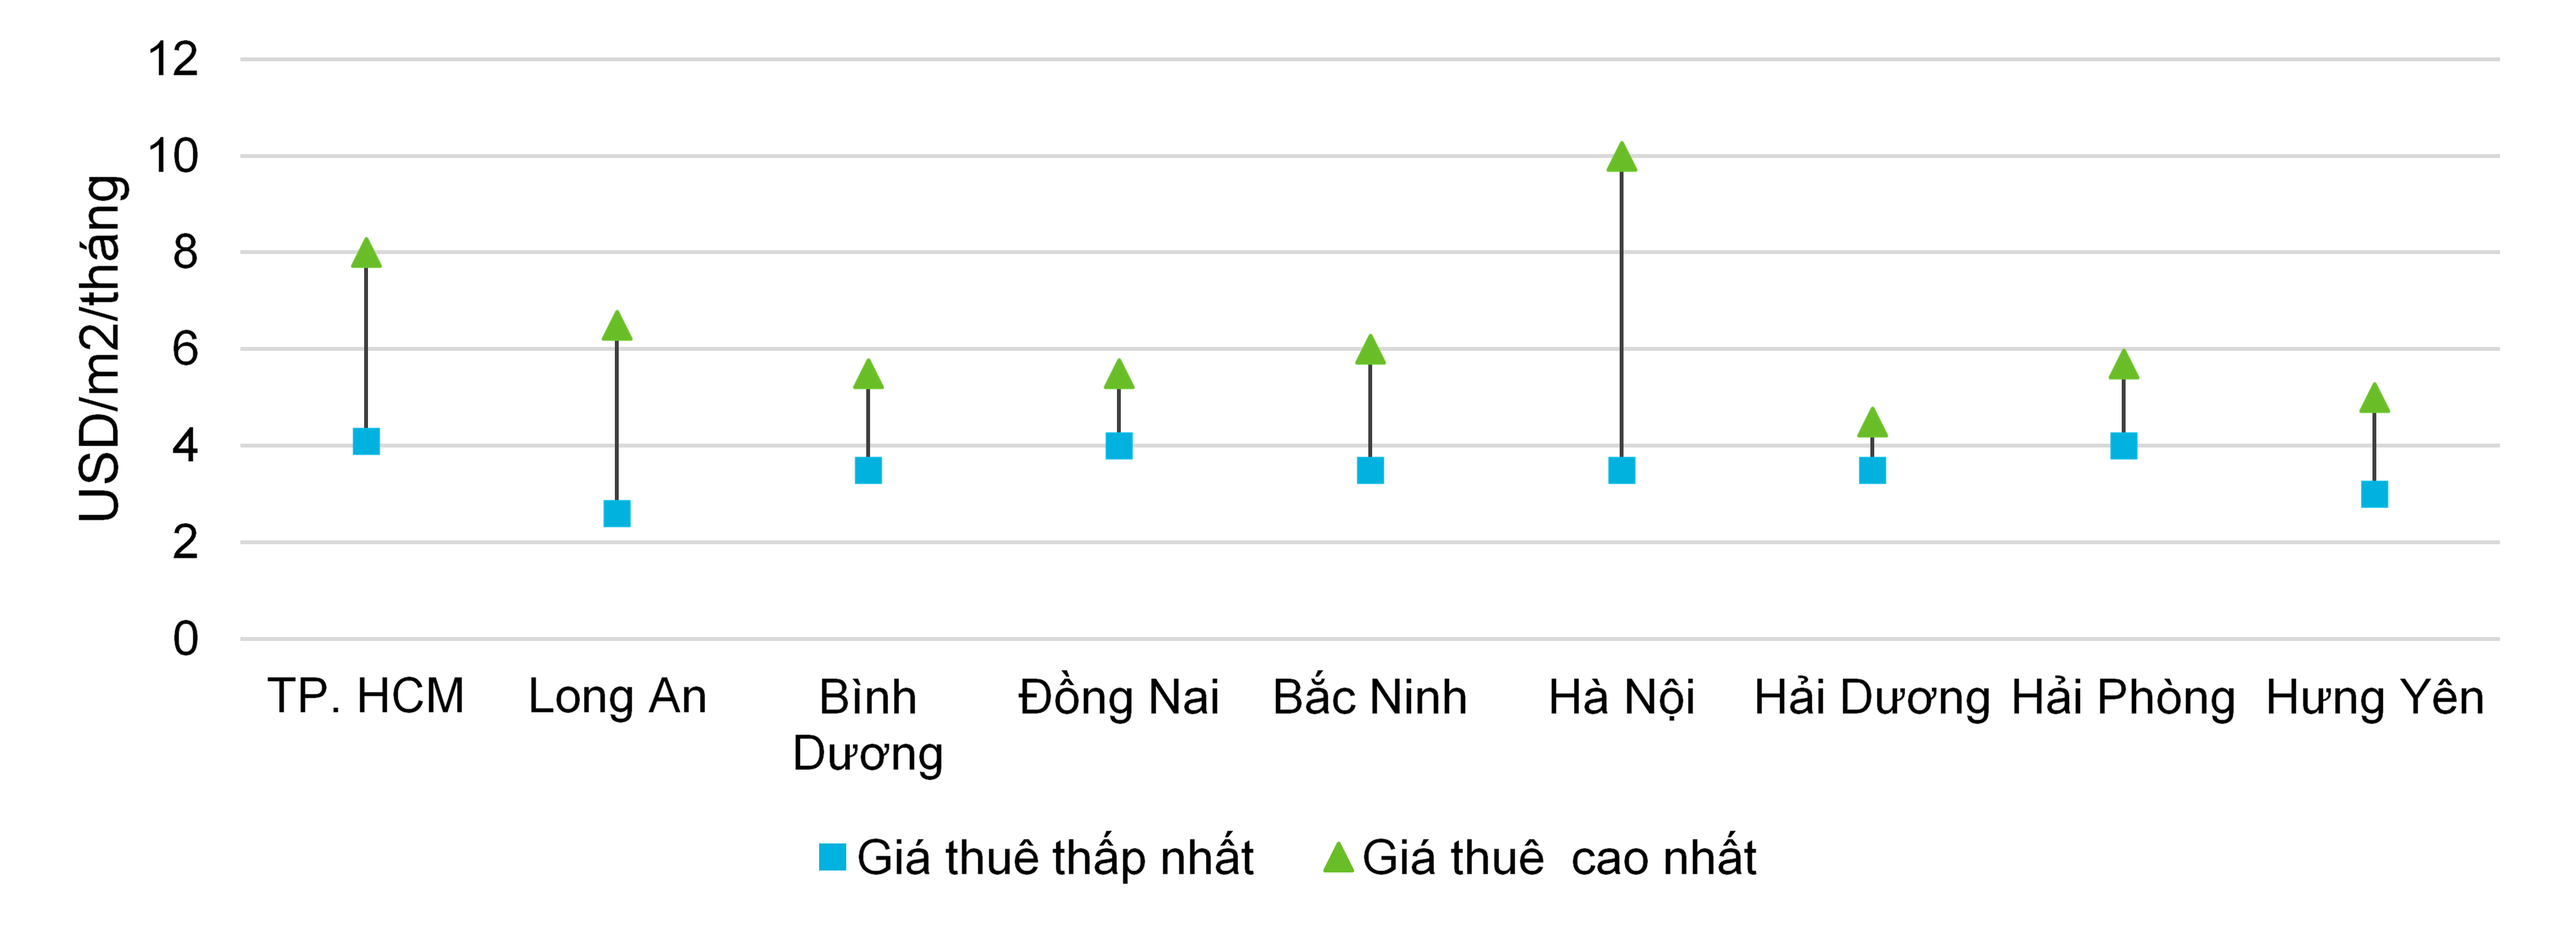 Bất động sản công nghiệp Việt Nam vẫn trên đà tăng giá - Ảnh 3.